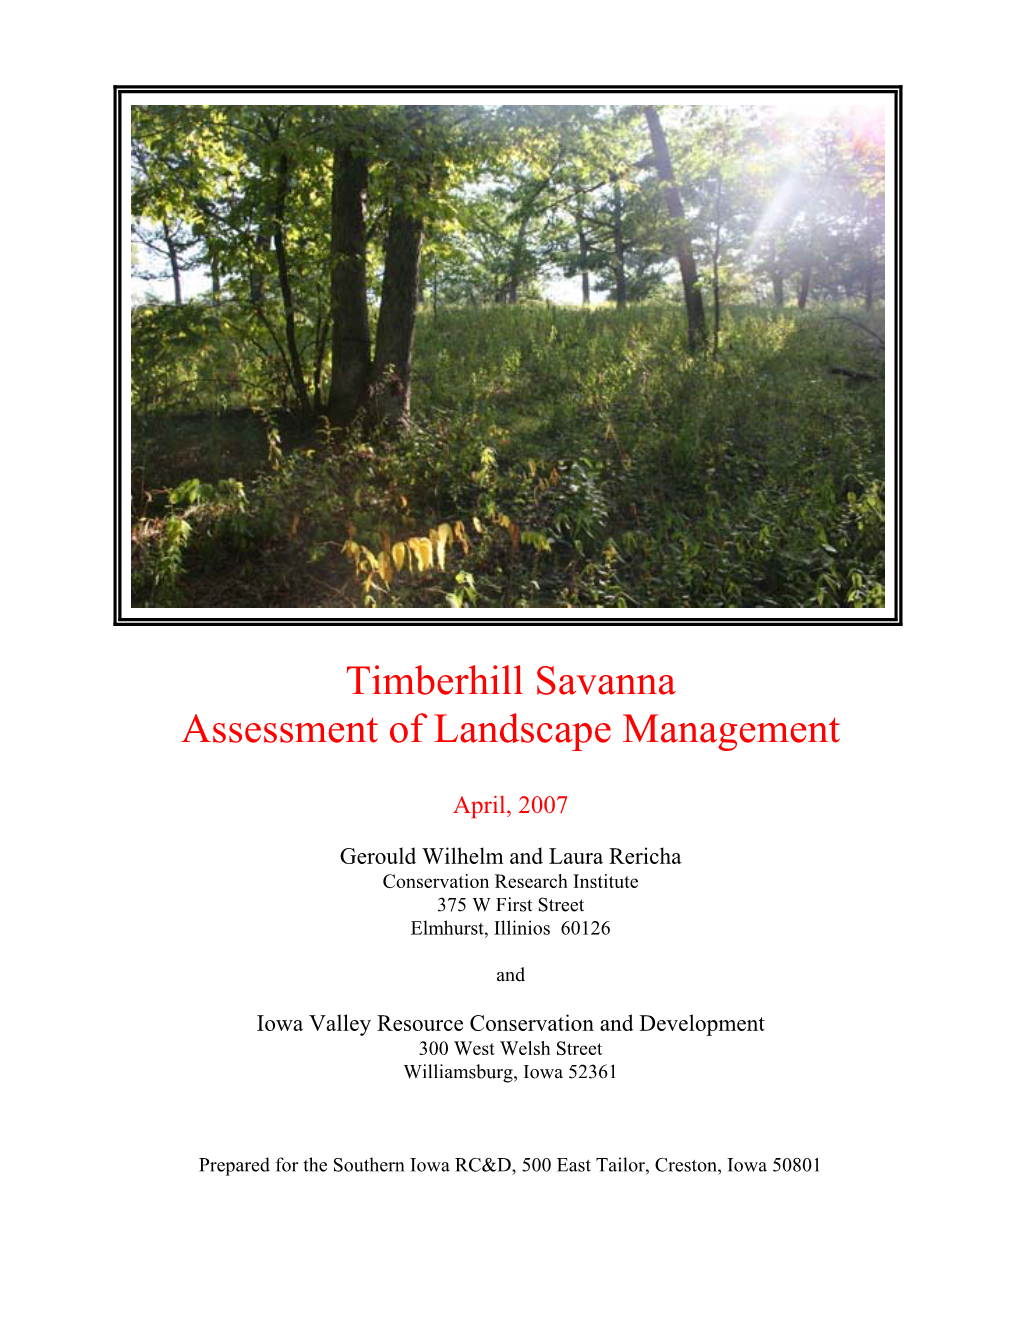 Timberhill Savanna Assessment of Landscape Management